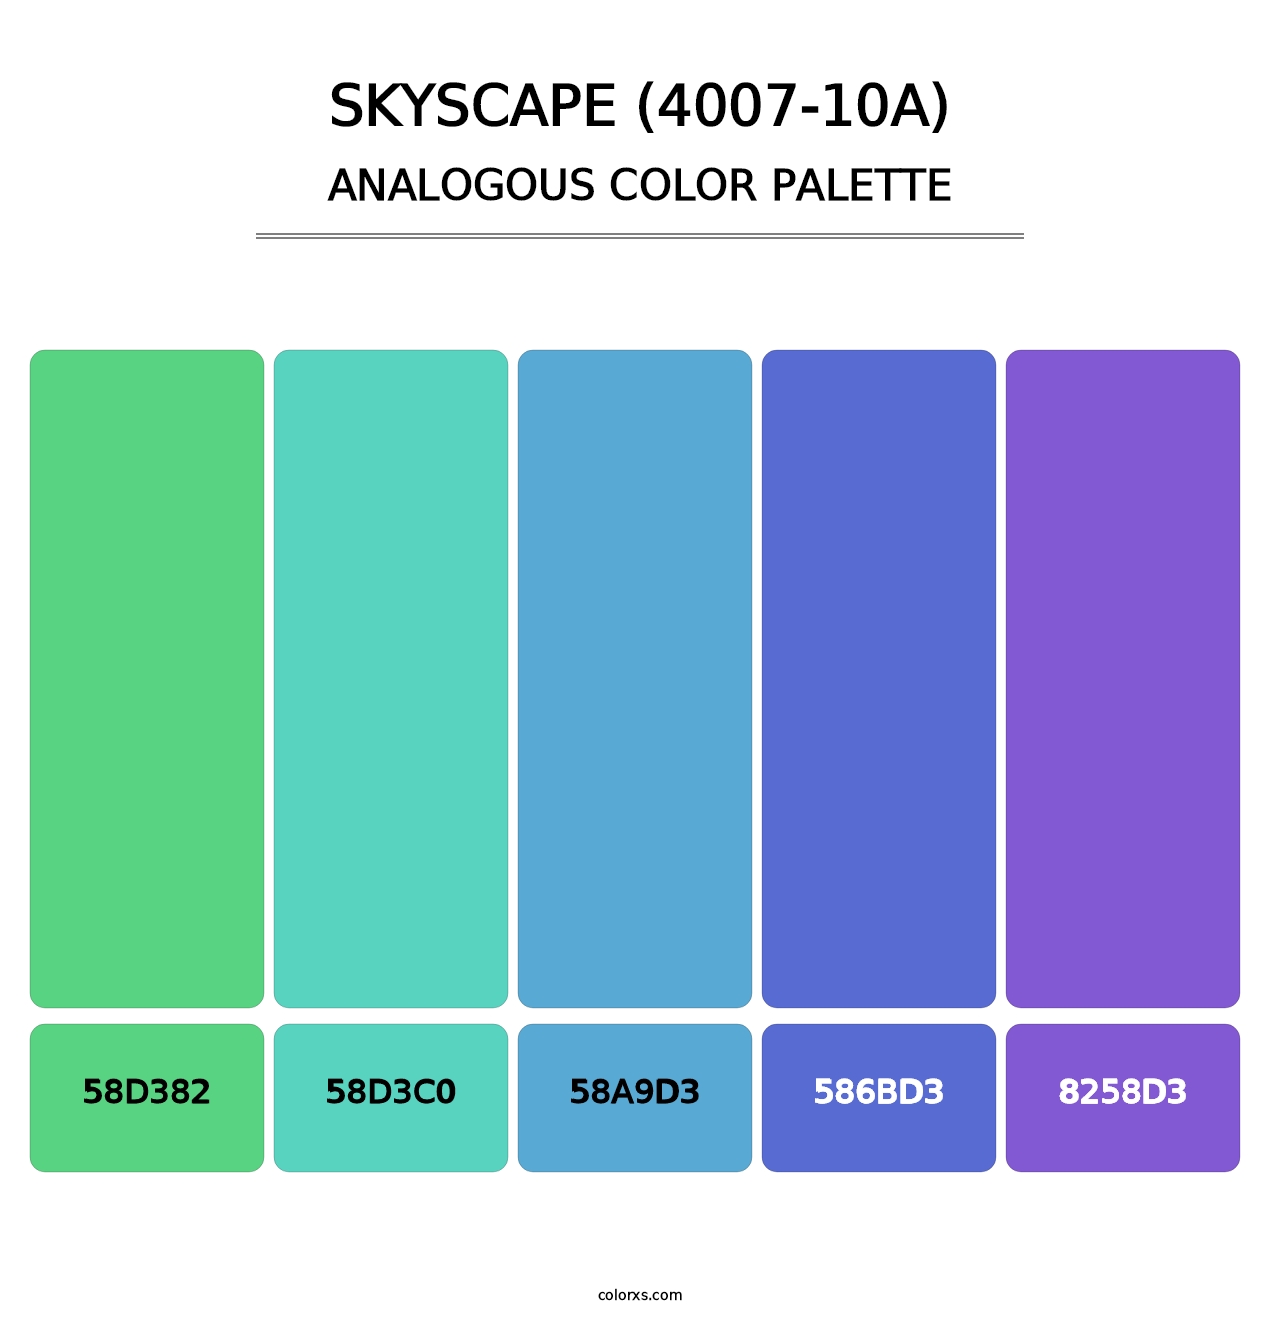 Skyscape (4007-10A) - Analogous Color Palette